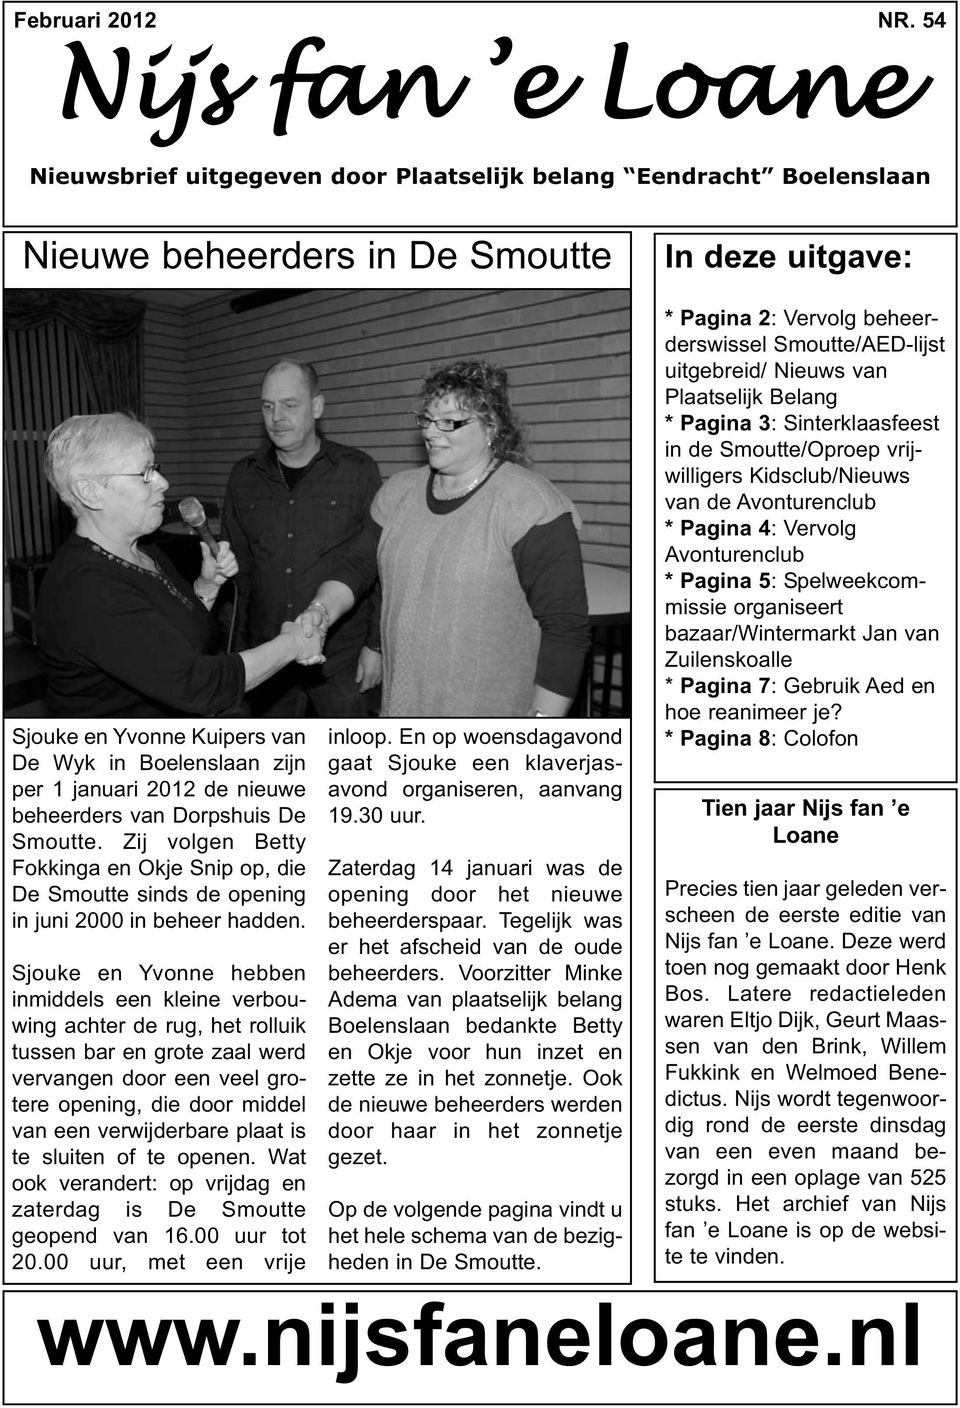 januari 2012 de nieuwe beheerders van Dorpshuis De Smoutte. Zij volgen Betty Fokkinga en Okje Snip op, die De Smoutte sinds de opening in juni 2000 in beheer hadden.